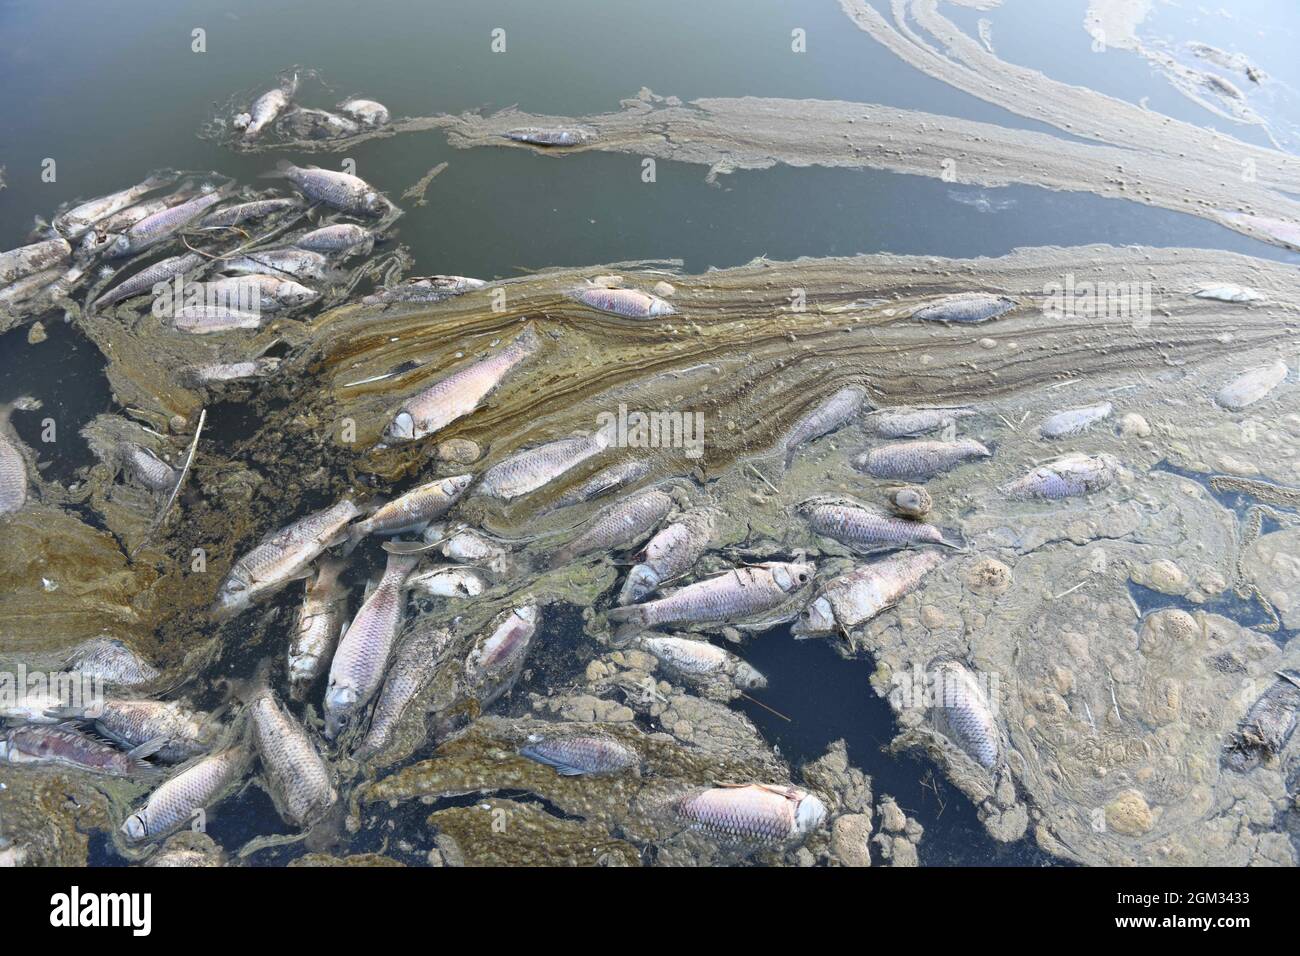 Dans la ville de touristik, dans la région de l'Anatolie orientale en Turquie, les morts de poissons ont peur. En raison du réchauffement de la planète et des conditions de sécheresse, Kockopru, situé dans le district d'Ercis, a un niveau d'eau extrêmement bas. À côté des micro-algues qui prolifèrent dans l'eau à la baisse du niveau de l'eau, il est encore réduit, obstruant les branchies de ces poissons, causant le poisson à décliner dans les barrages. Photo de Ali Ihsan Ozturk/Demiroren Visual Media/ABACAPRESS.COM Banque D'Images